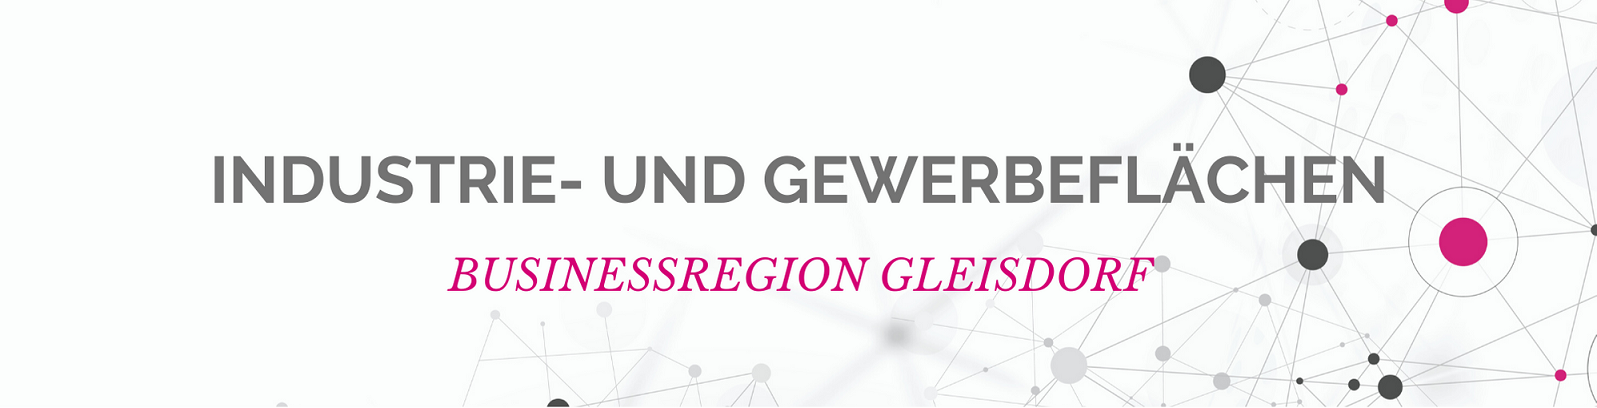 Banner Businessregion Gleisdorf